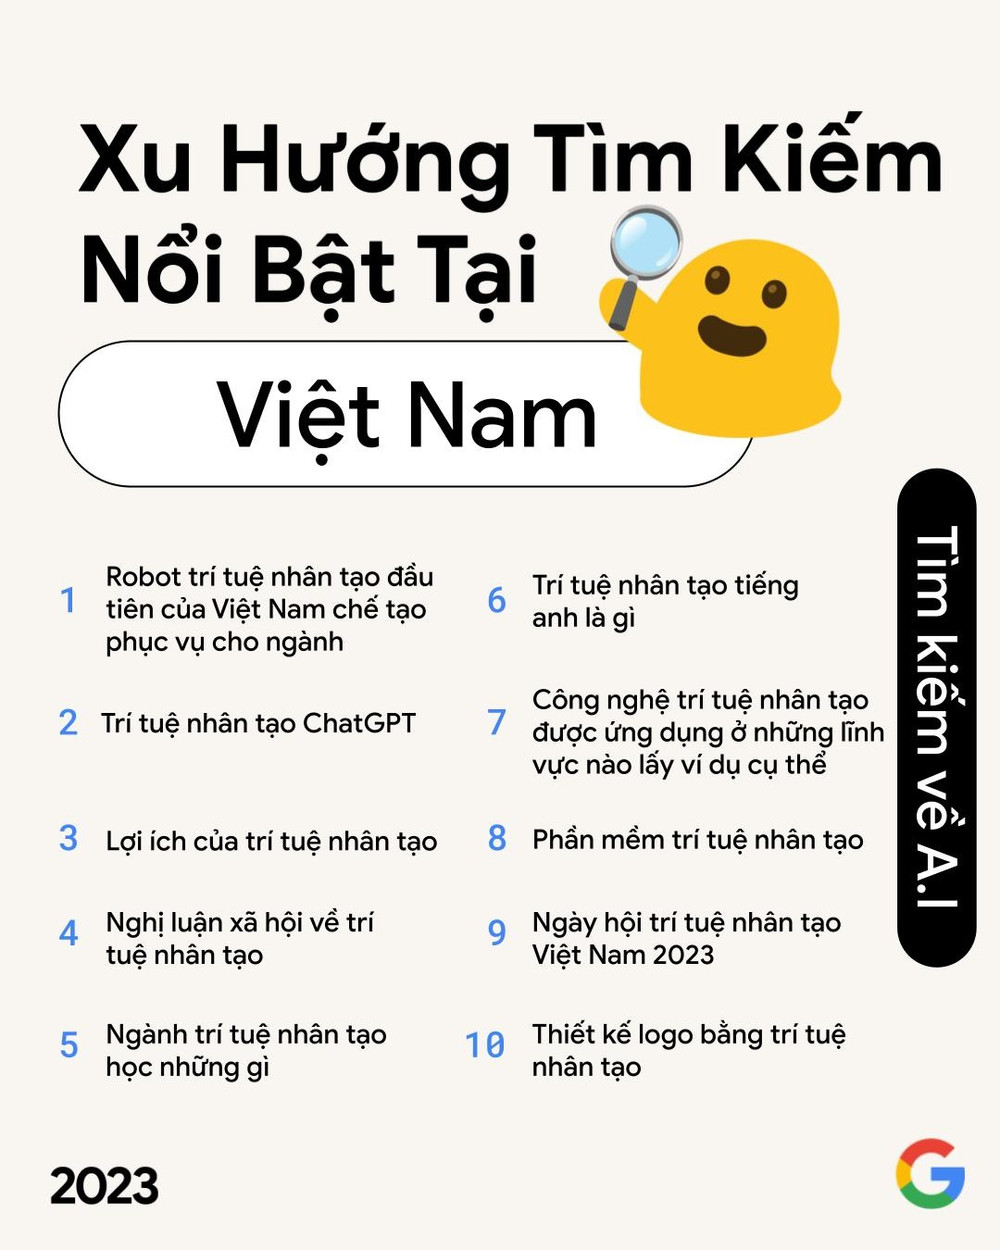 Từ khóa nào người dùng internet Việt Nam tìm kiếm nhiều nhất trong năm 2023?